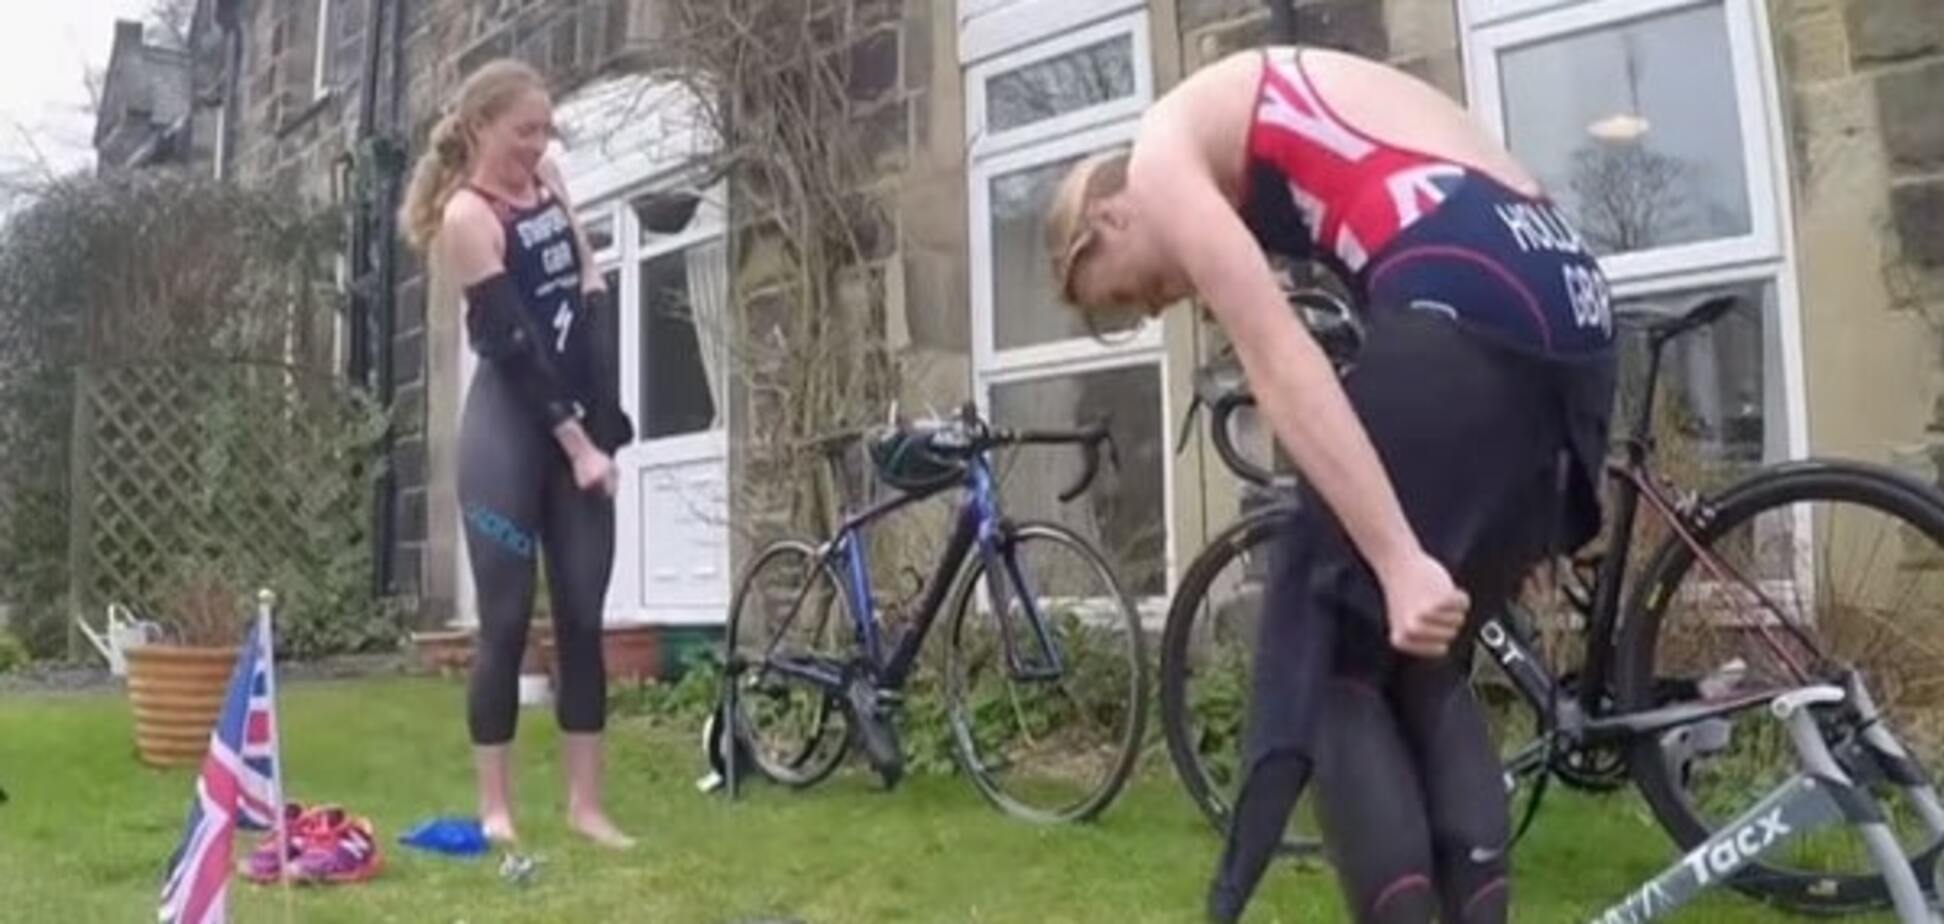 Оригинальная тренировка. Британские спортсменки устроили конкурс на раздевание: видеофакт